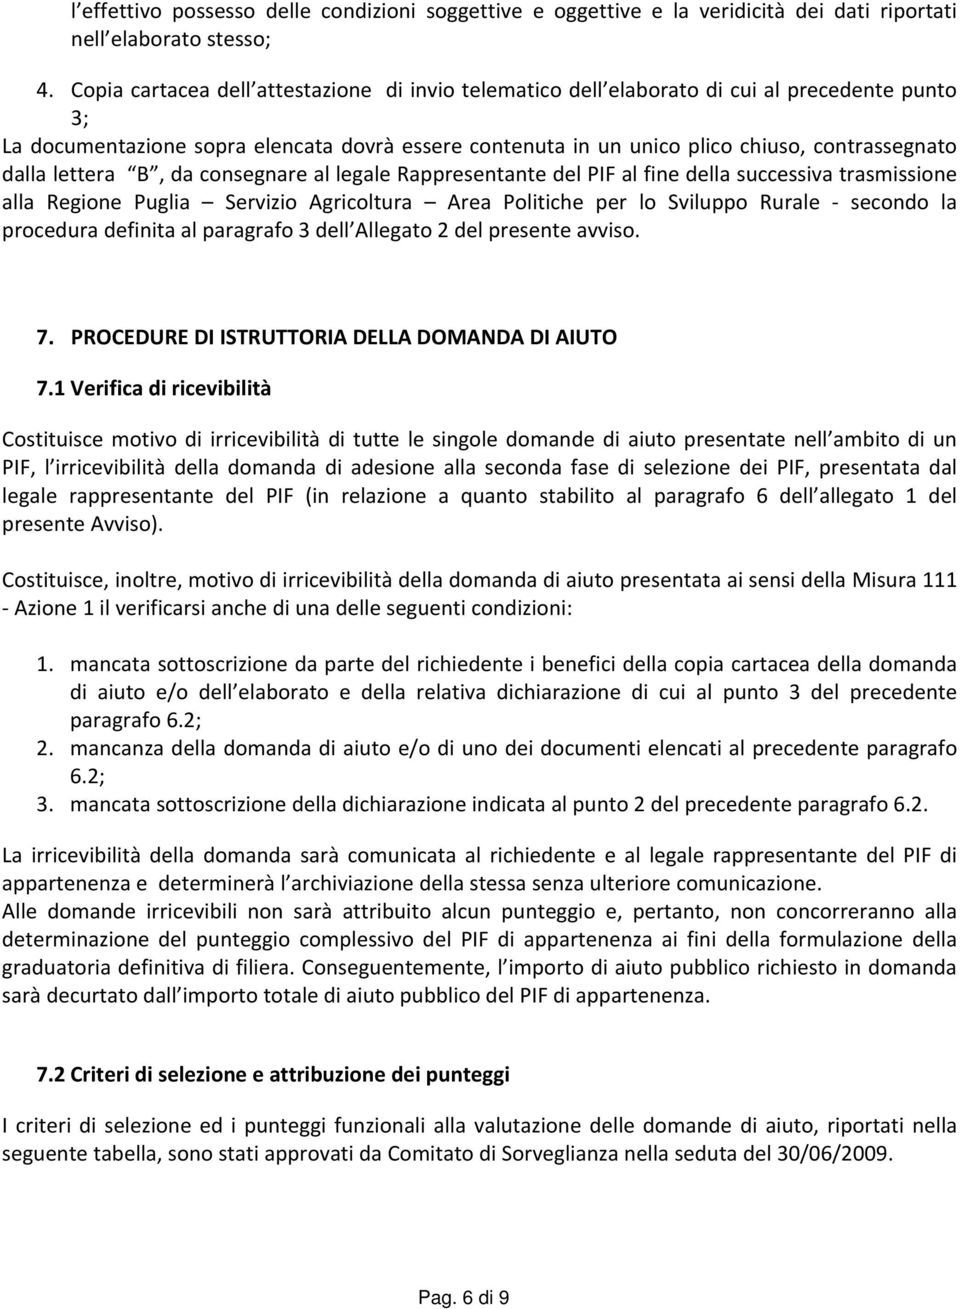 dalla lettera B, da consegnare al legale Rappresentante del PIF al fine della successiva trasmissione alla Regione Puglia Servizio Agricoltura Area Politiche per lo Sviluppo Rurale secondo la